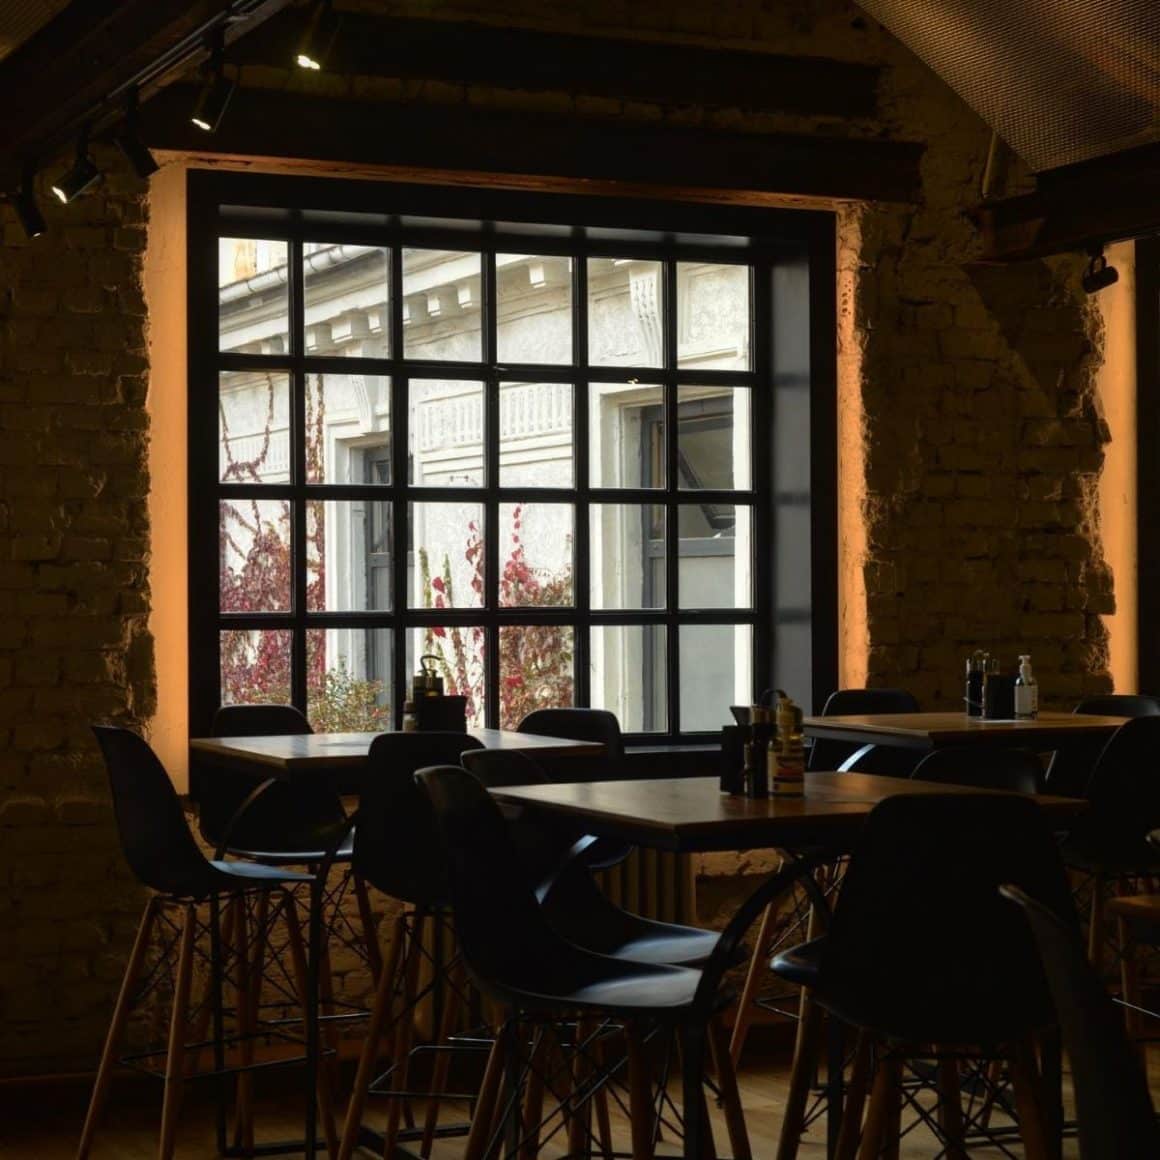 interiorul unui restaurant scandinav cu câteva mese in fata unui geam mare